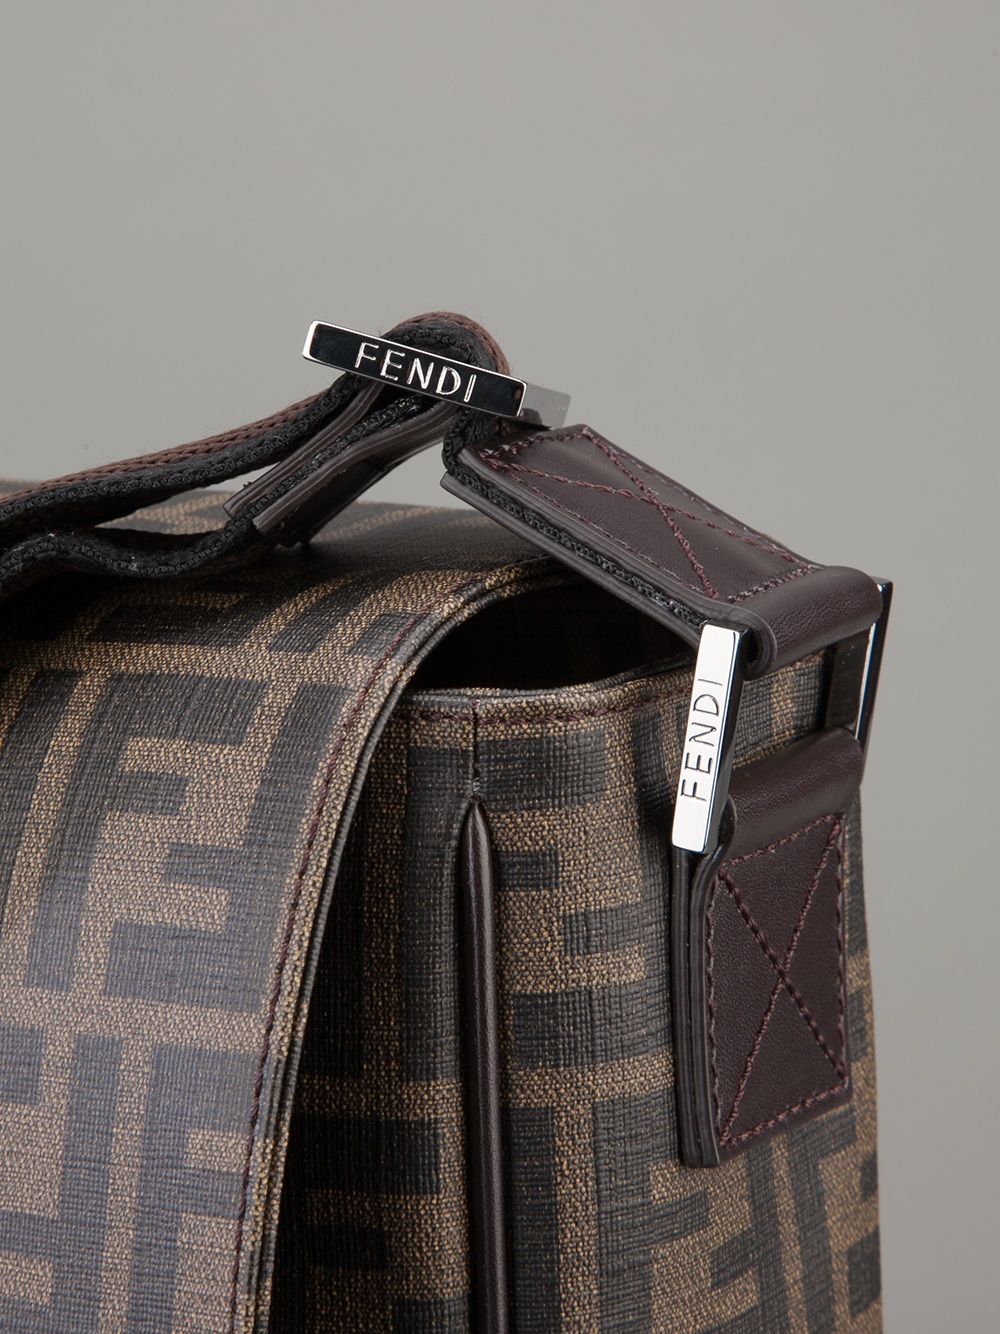 Lyst - Fendi Monogram Messenger Bag in Brown for Men